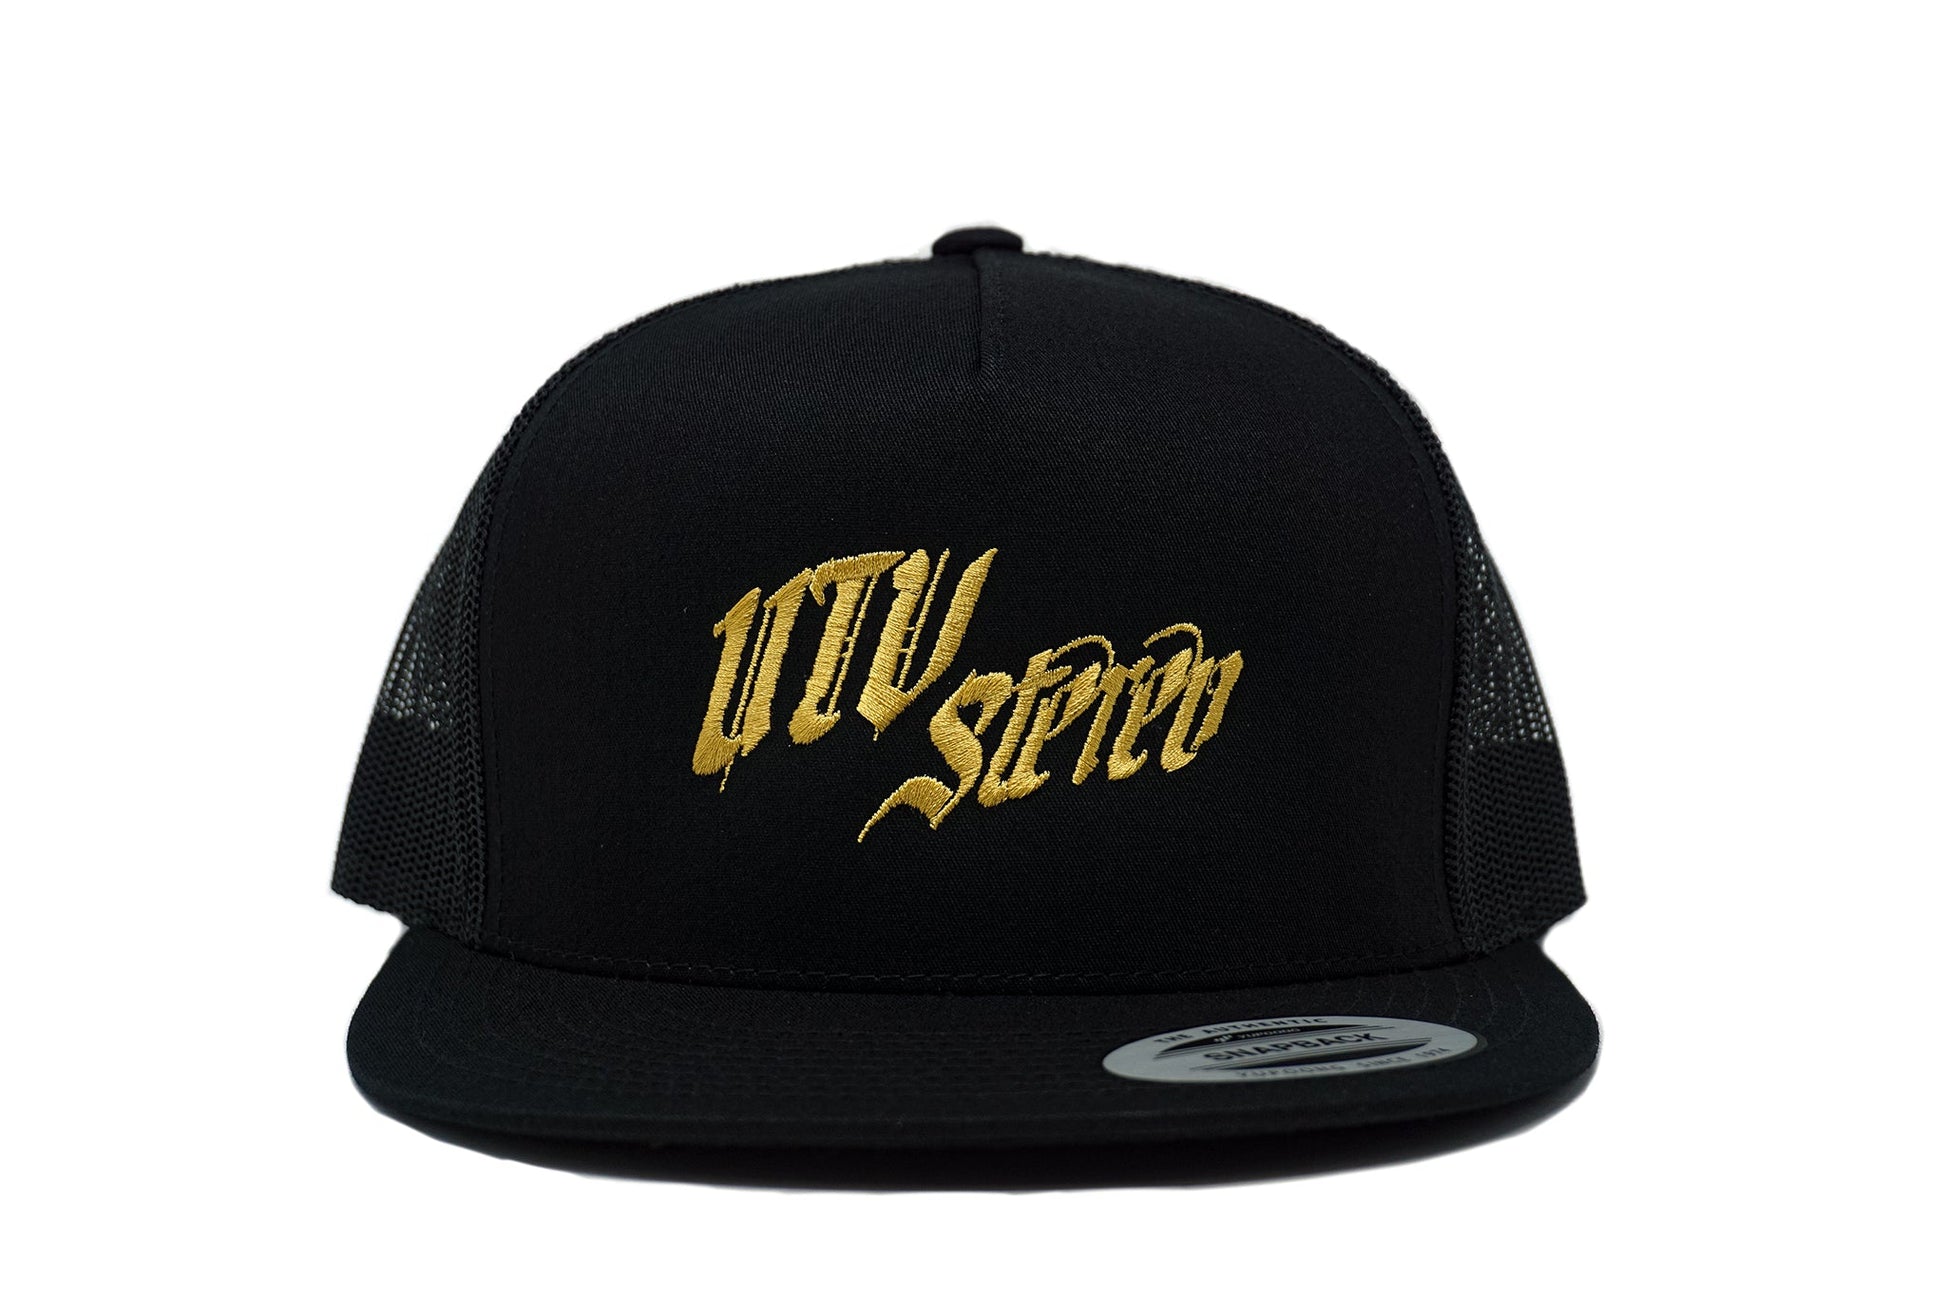 UTV Stereo Mesh Snapback Hat